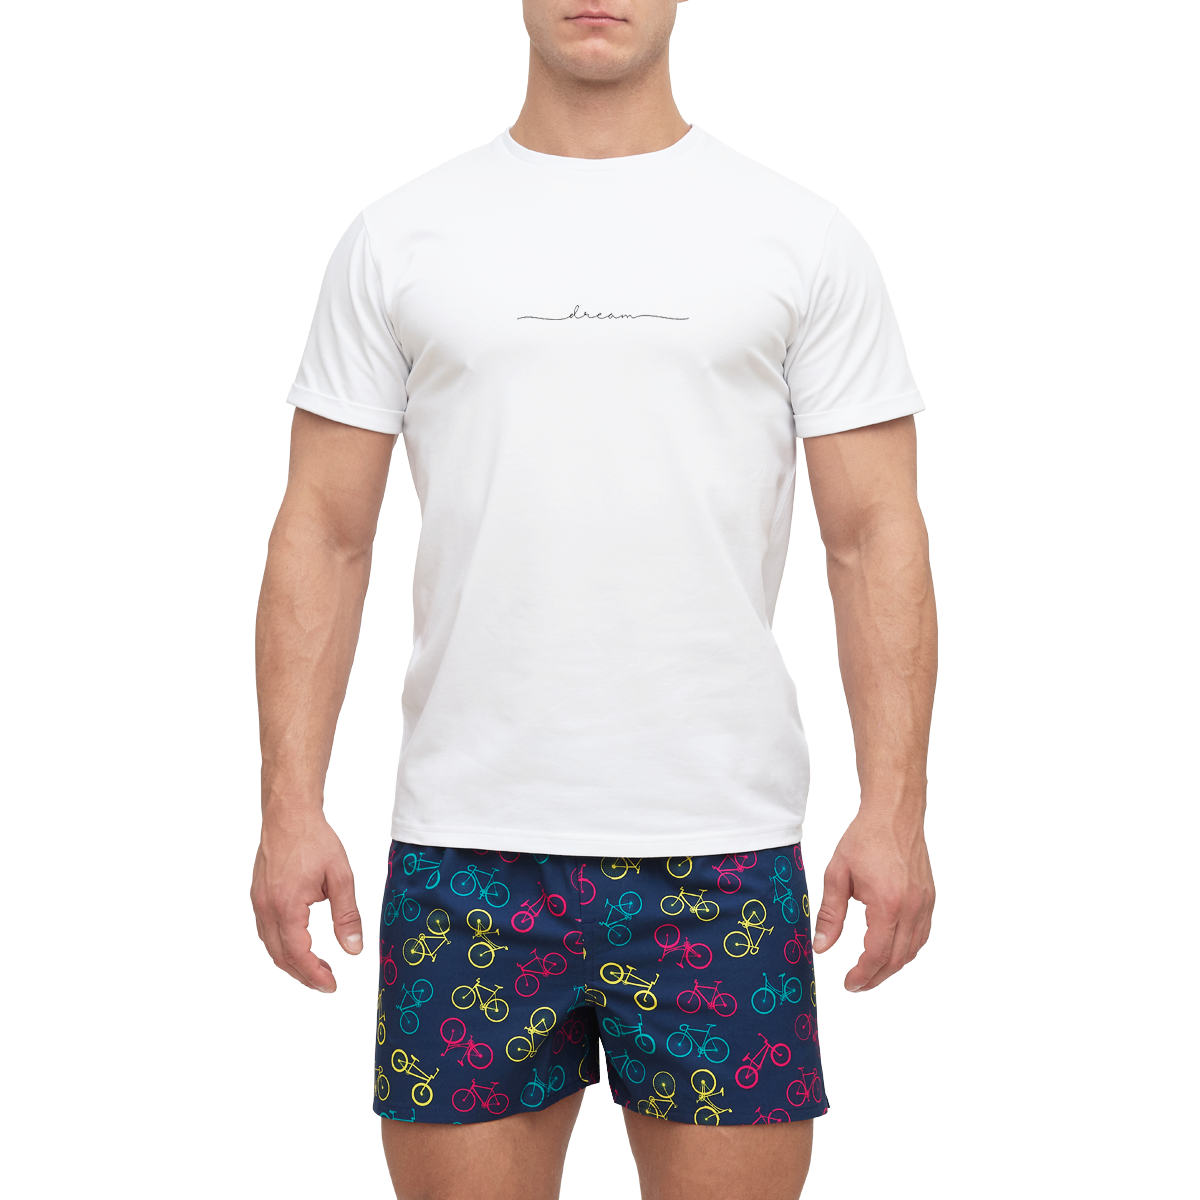 E-shop Slippsy Pánske tričko Dream biele /L